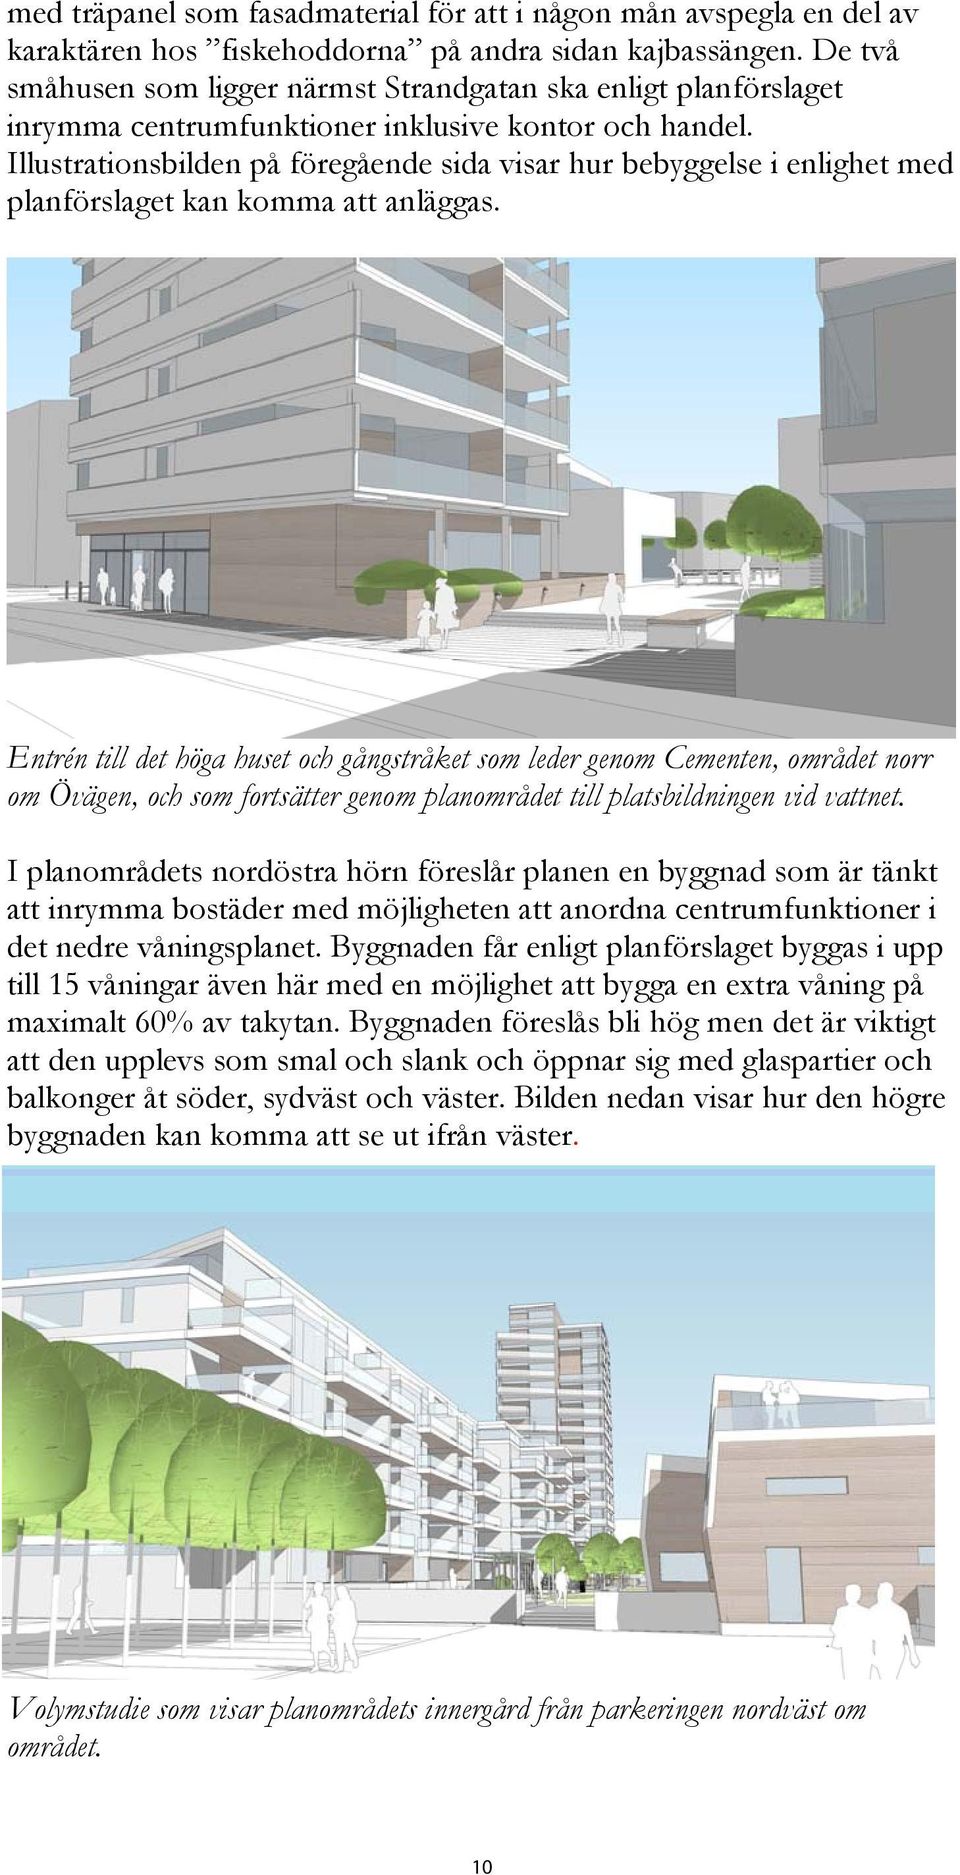 Illustrationsbilden på föregående sida visar hur bebyggelse i enlighet med planförslaget kan komma att anläggas.